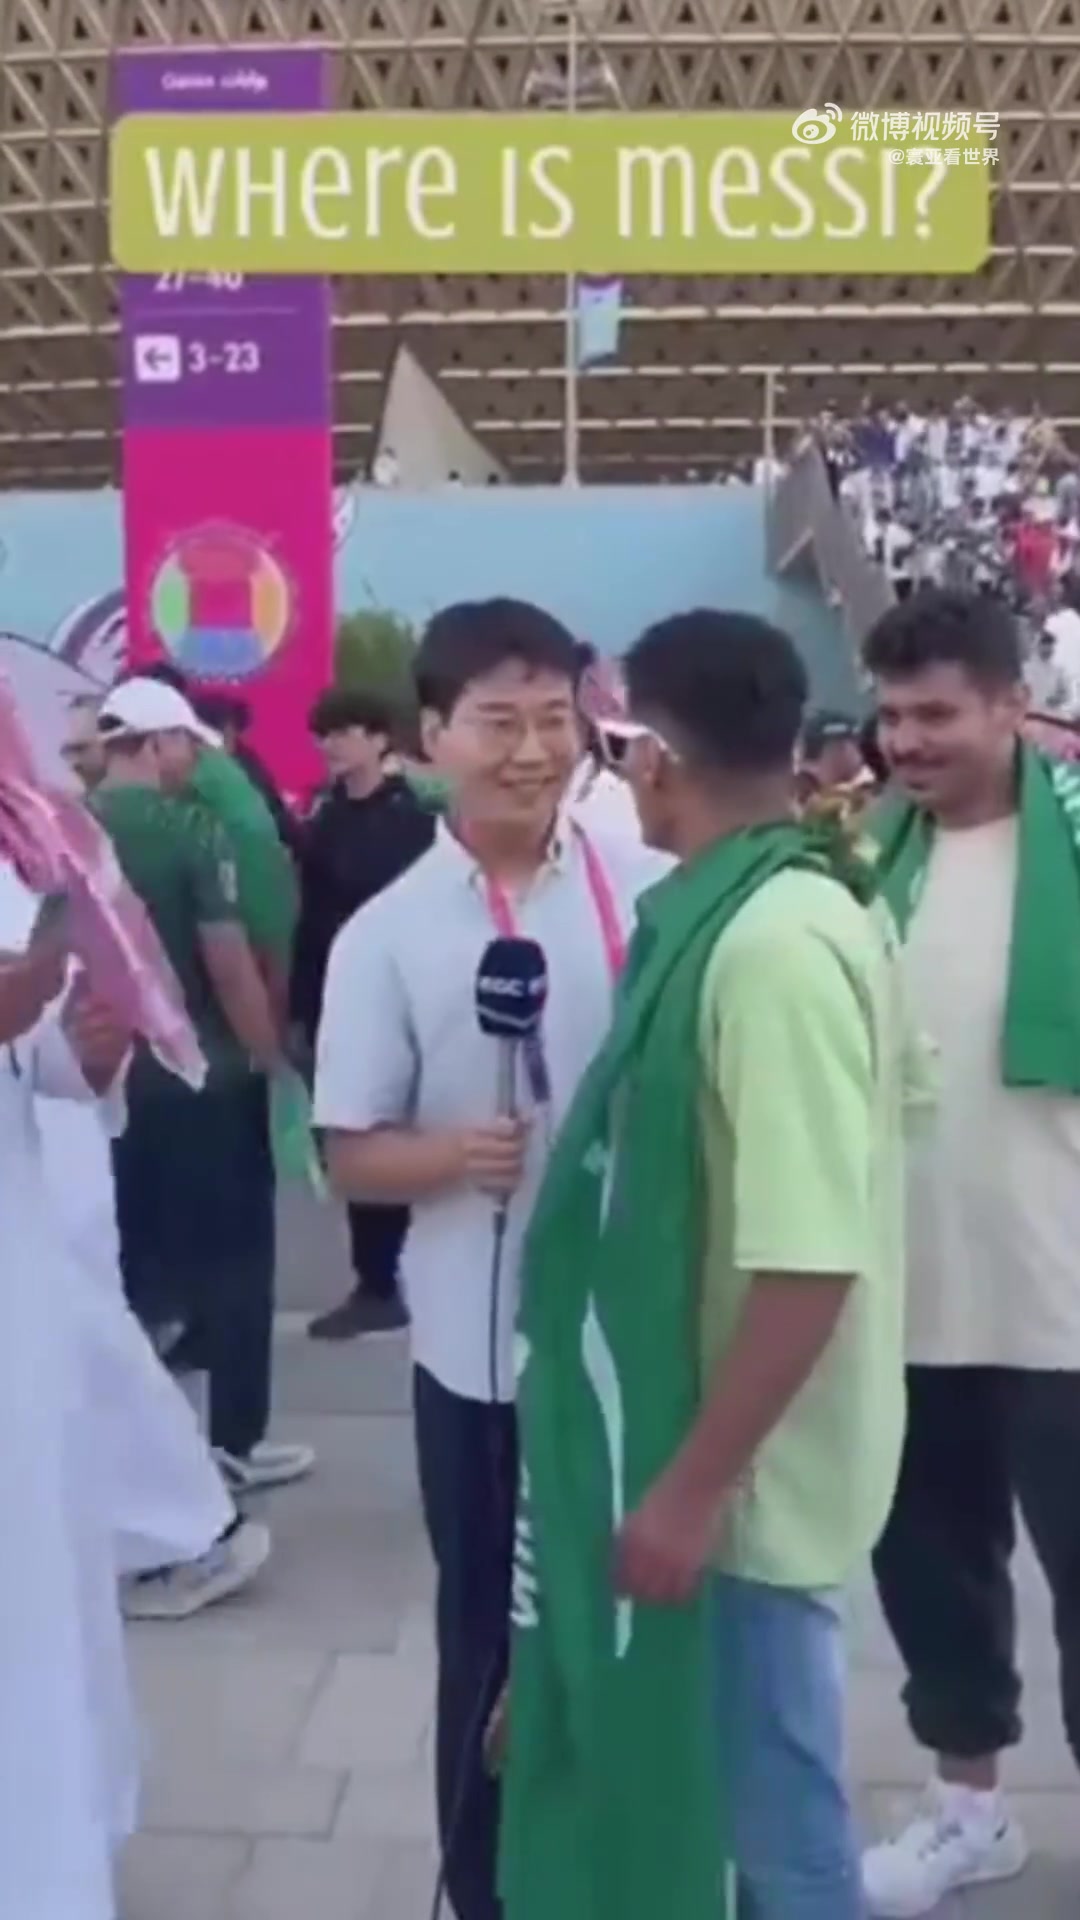 沙特球迷向场外的记者问询: 梅西在哪里？